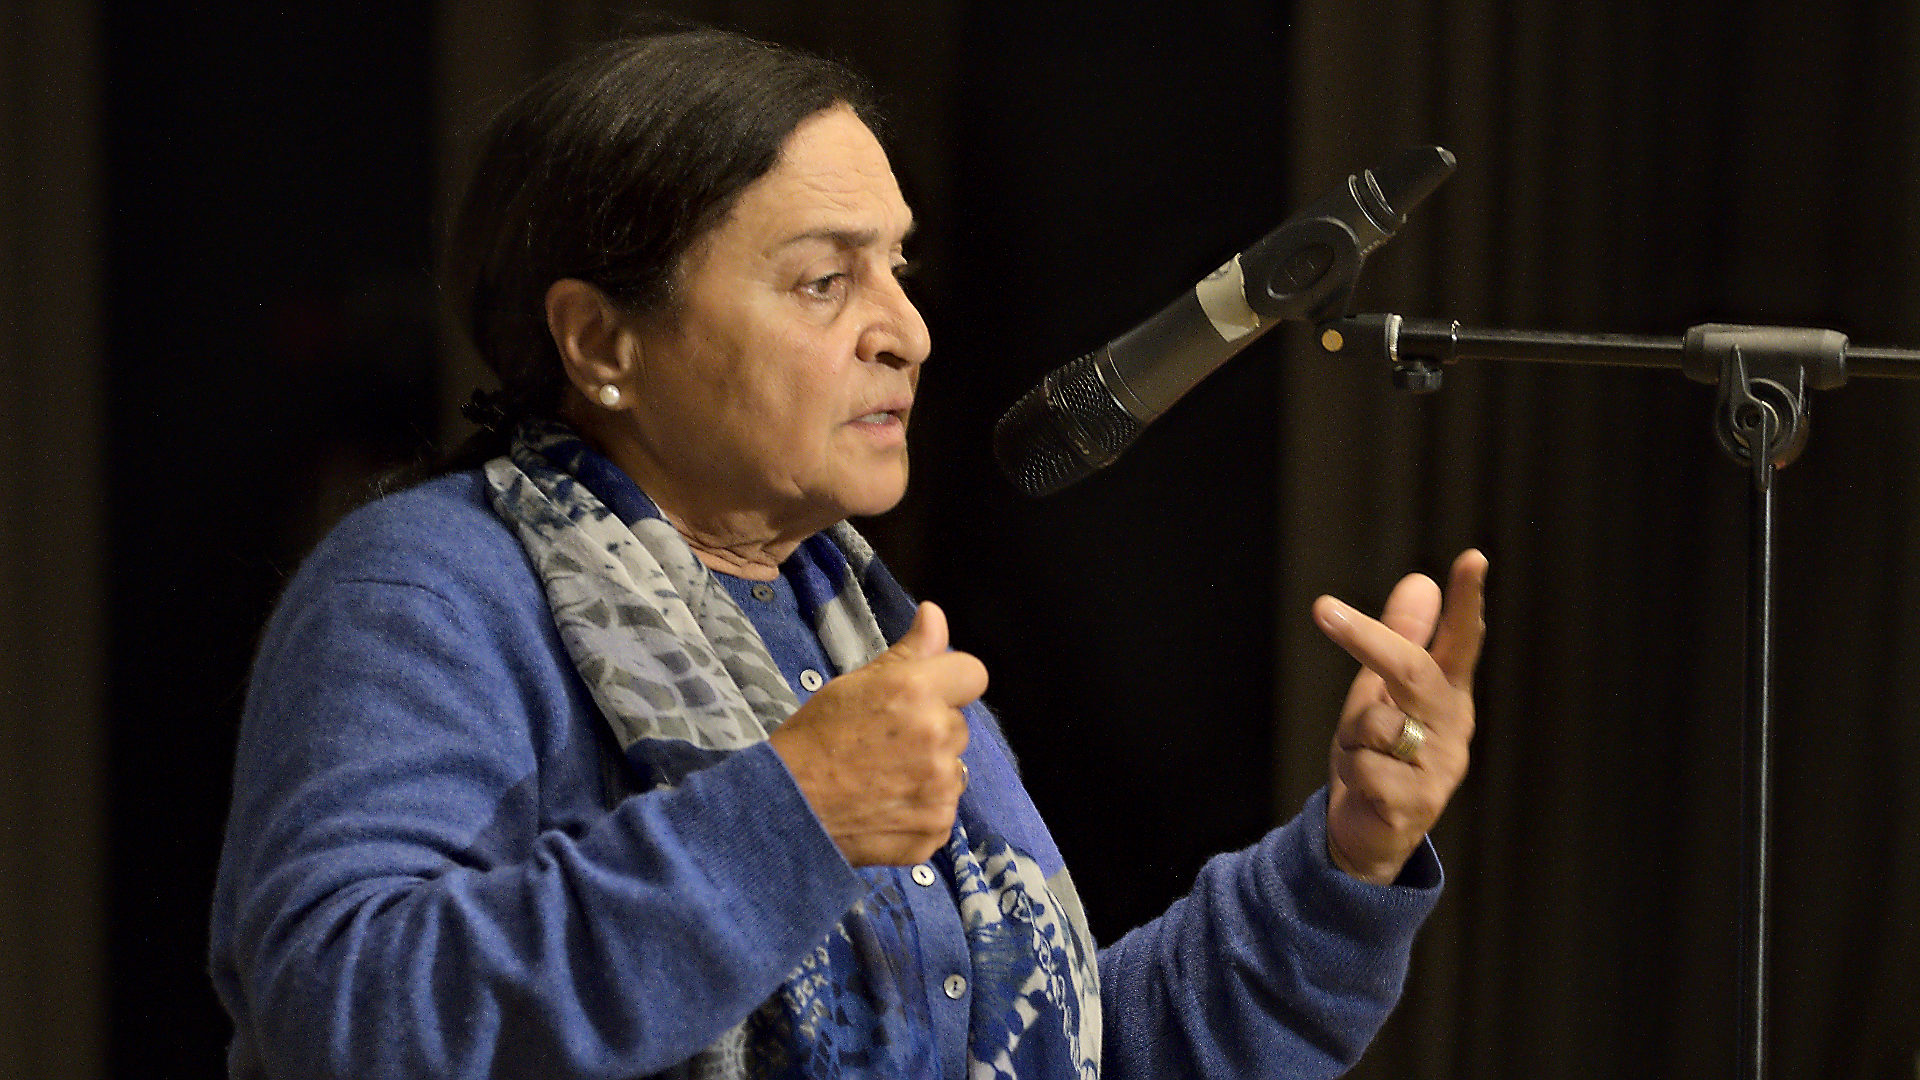 Sumaya Farhat-Naser bei einem Vortrag.